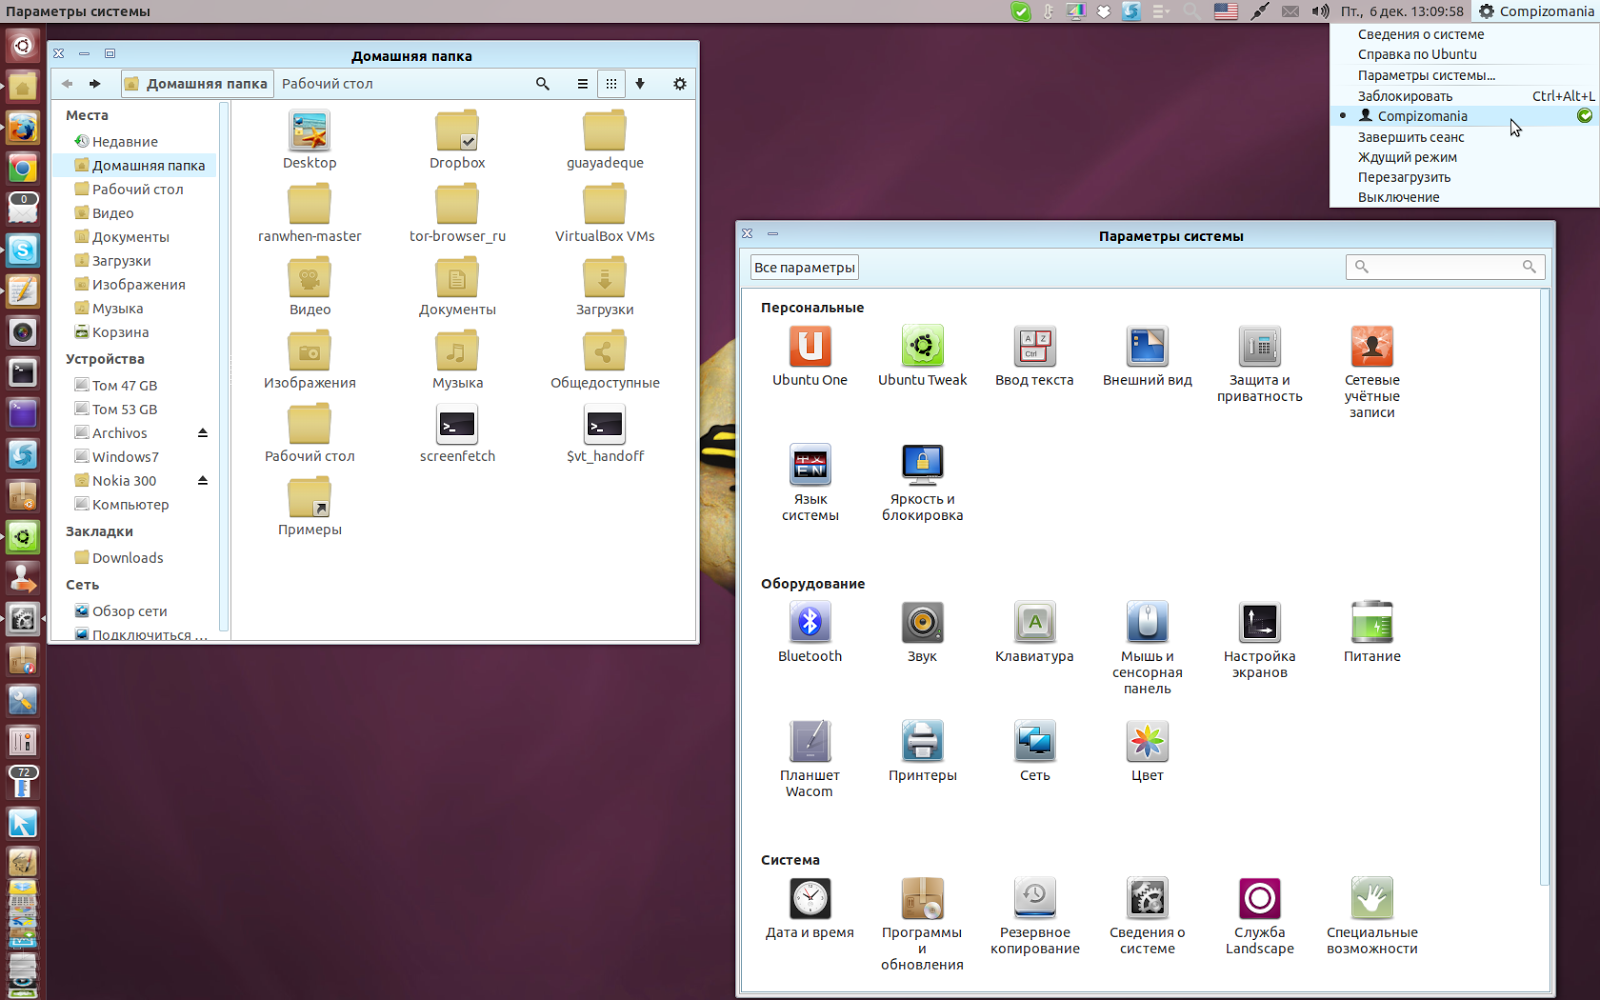 Ярлыки в linux. Интерфейс линукс иконки. Стандартные иконки линукс. Ubuntu 13.04 системные требования. Иконки Linux Mint.